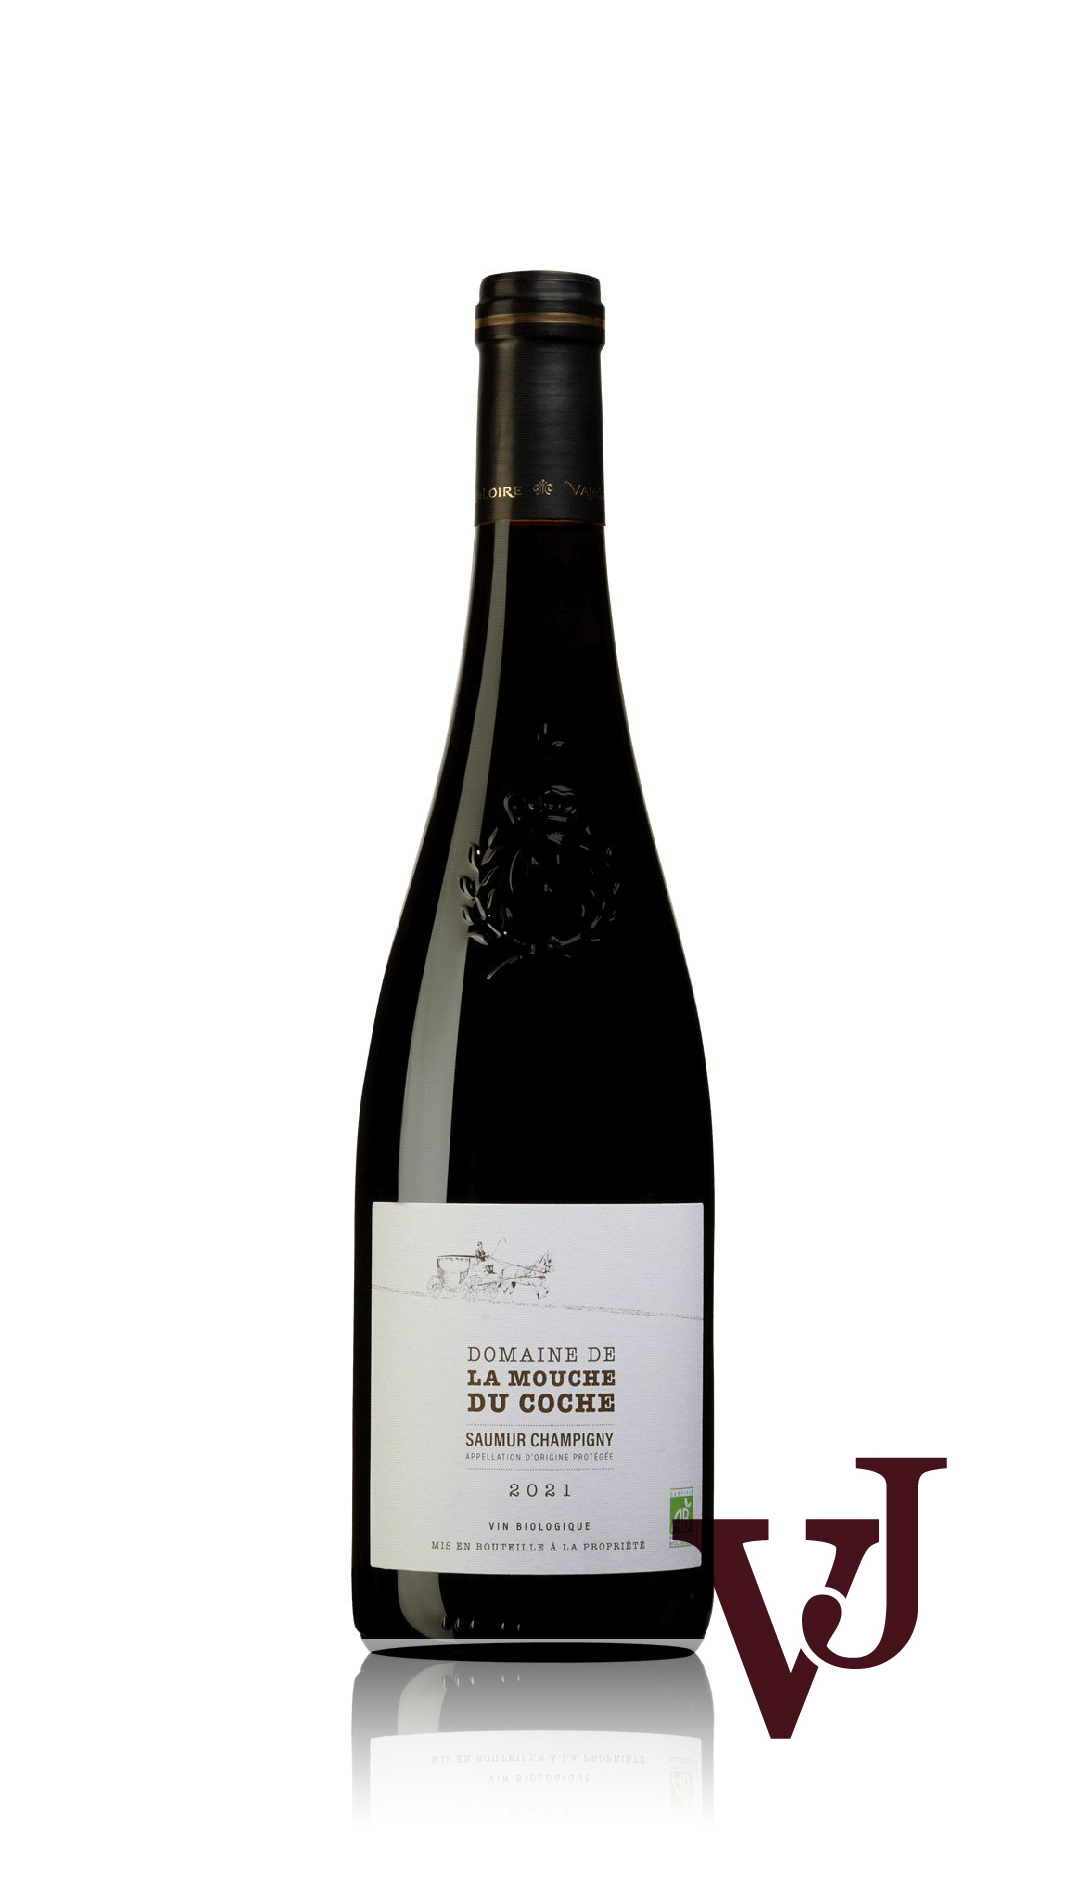 Rött Vin - Domaine de la Mouche du Coche Saumur-Champigny 2021 artikel nummer 9315601 från producenten Cave Robert & Marcel från Frankrike